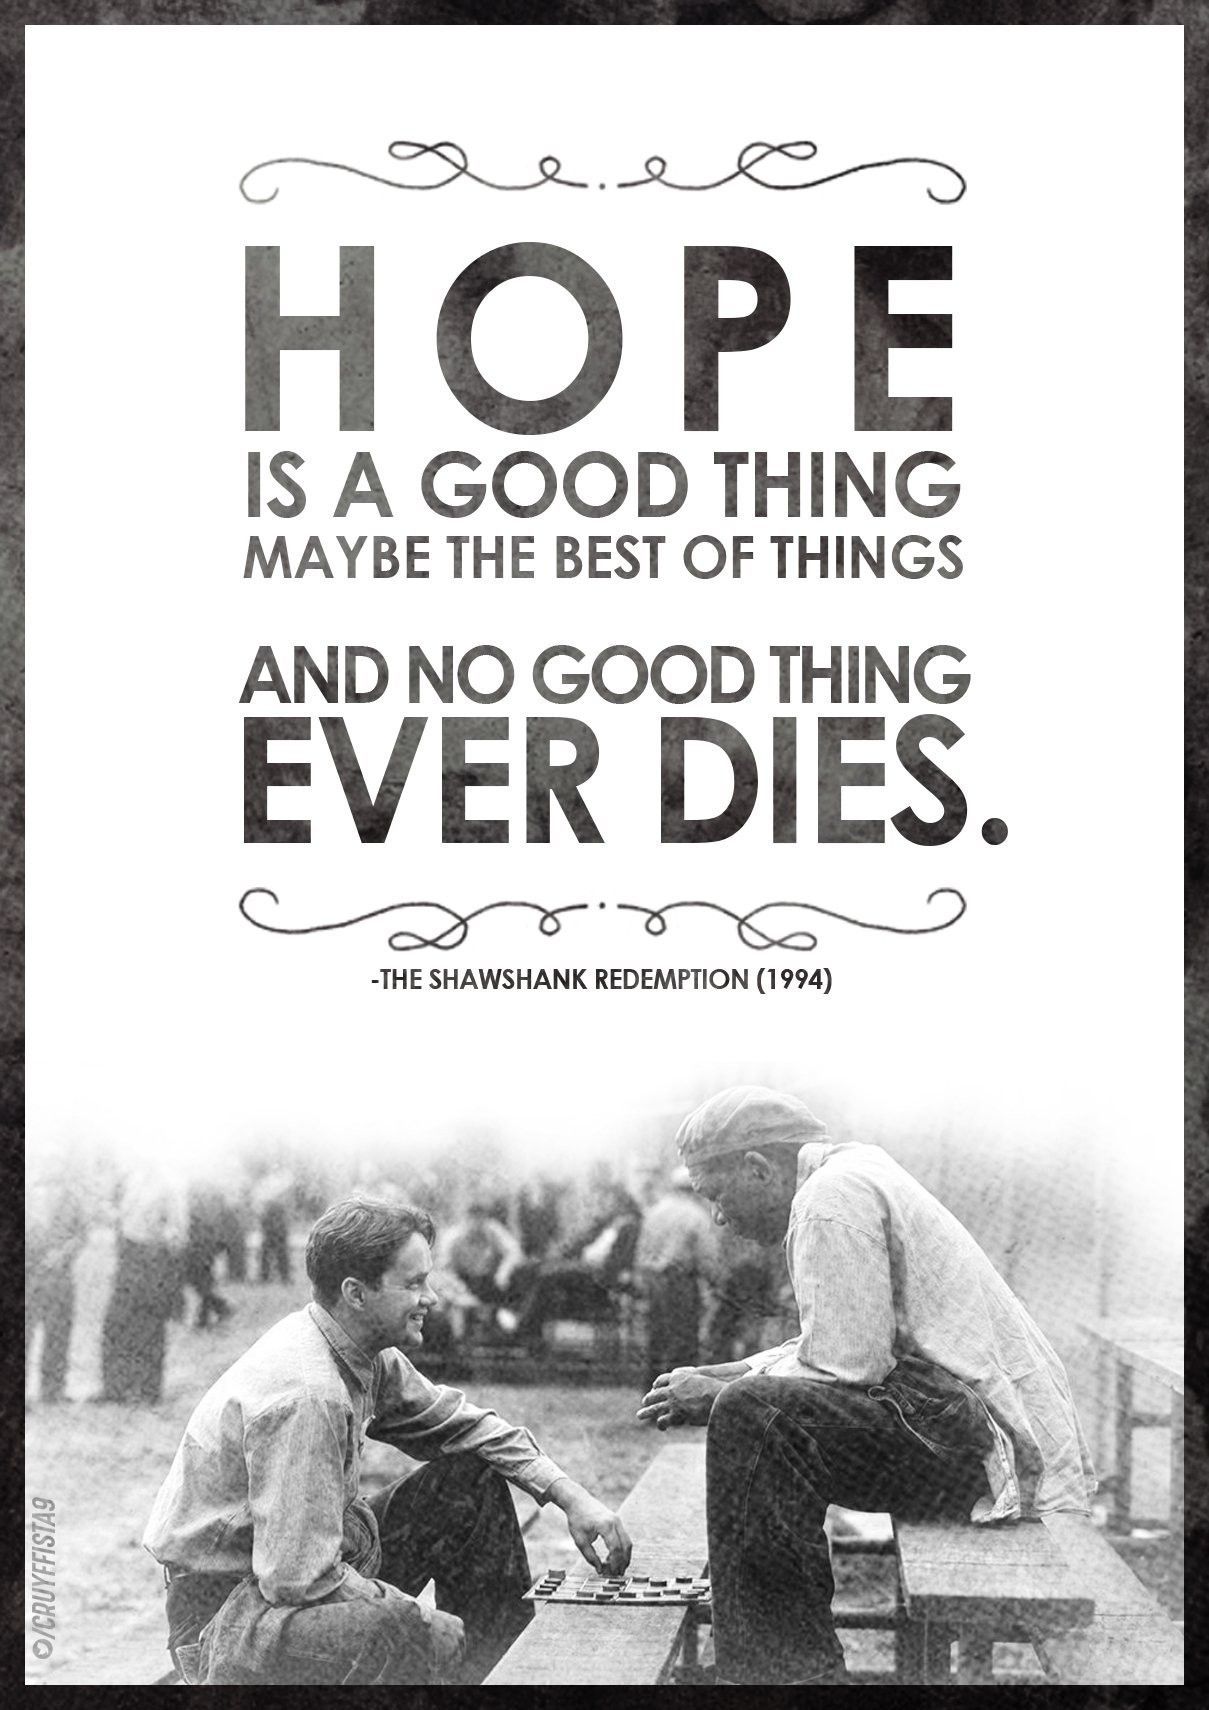 The Shawshank Redemption Hintergrundbild 1209x1710. HOPE Shawshank Redemption Movie Poster Typography. Shawshank redemption quotes, Redemption quotes, Hope quotes